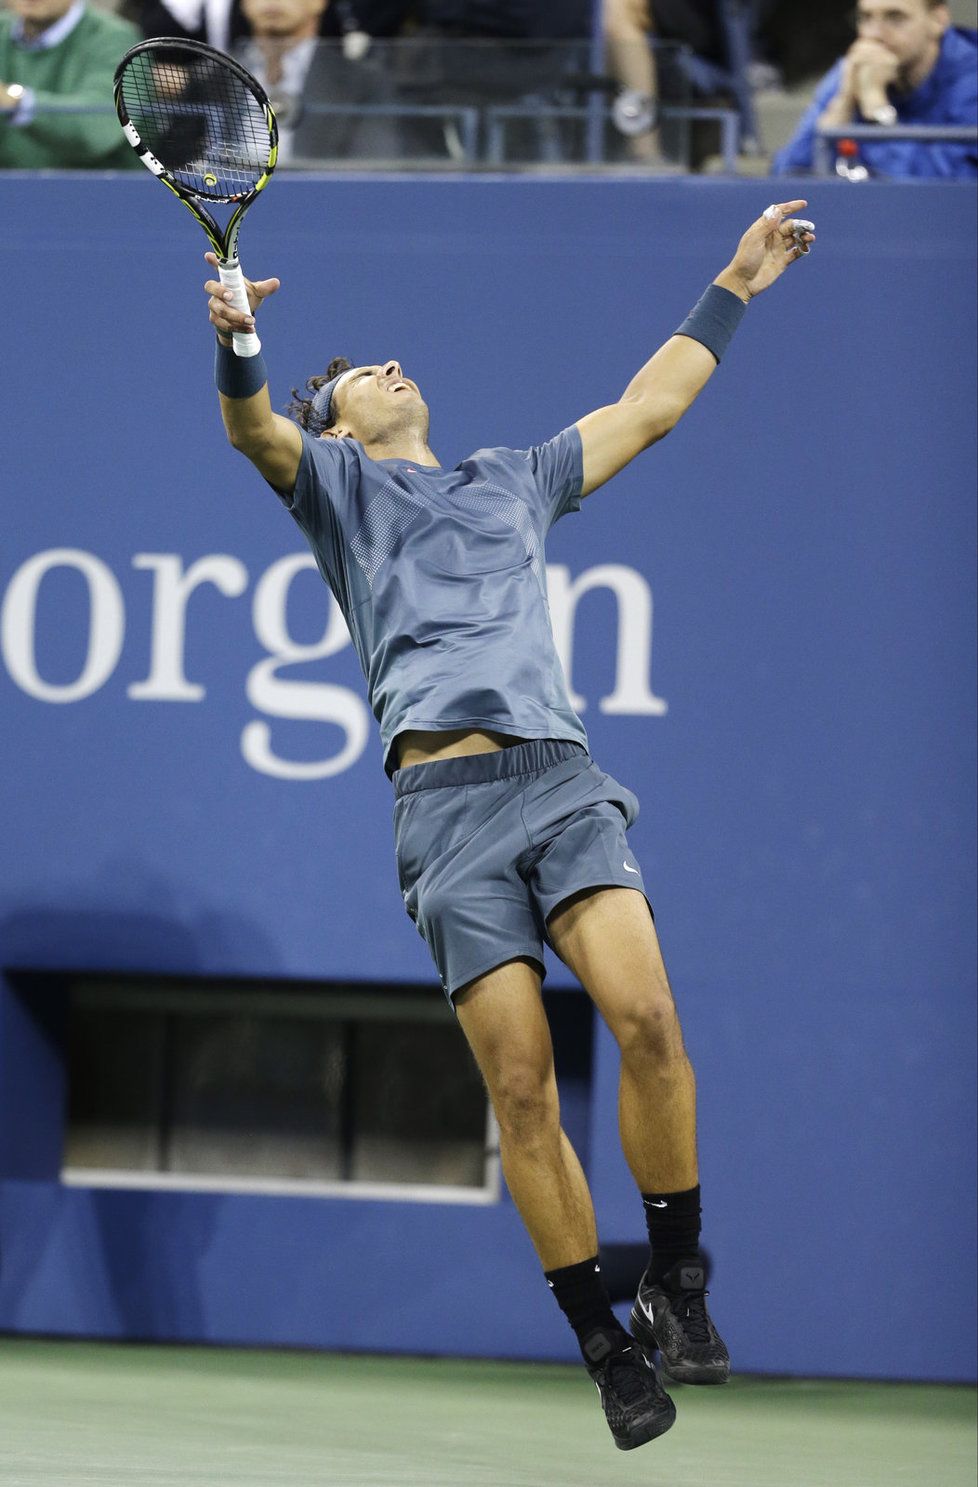 Španělský tenista Rafael Nadal vyhrál podruhé v kariéře US Open. Druhý hráč žebříčku ATP se ze svého celkem již třináctého grandslamového titulu radoval po vítězství ve finále v New Yorku nad Novakem Djokovičem.